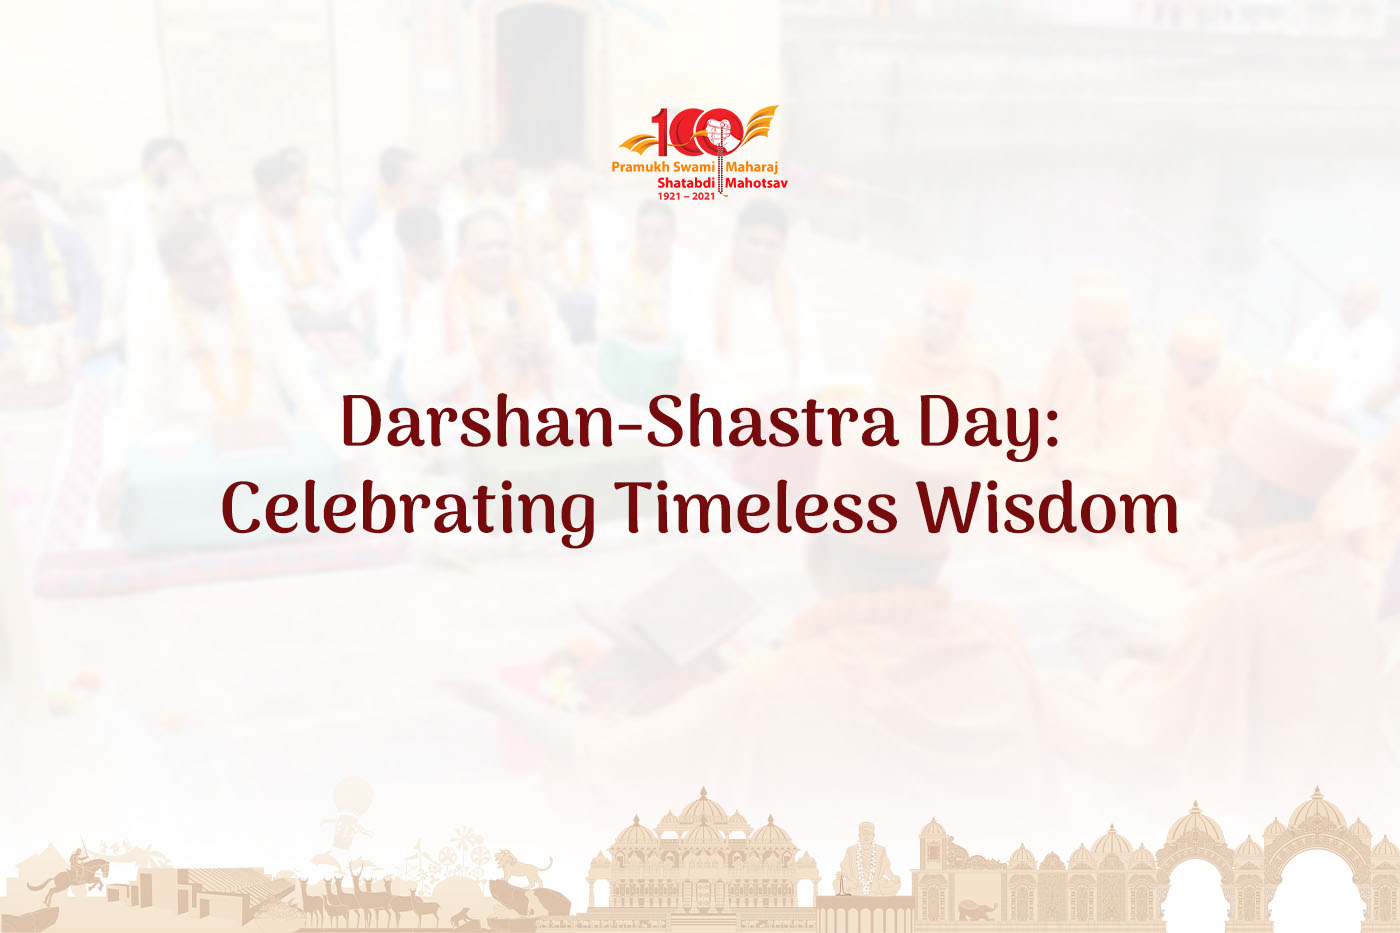 Darshan-Shastra Day: Celebrating Timeless Wisdom